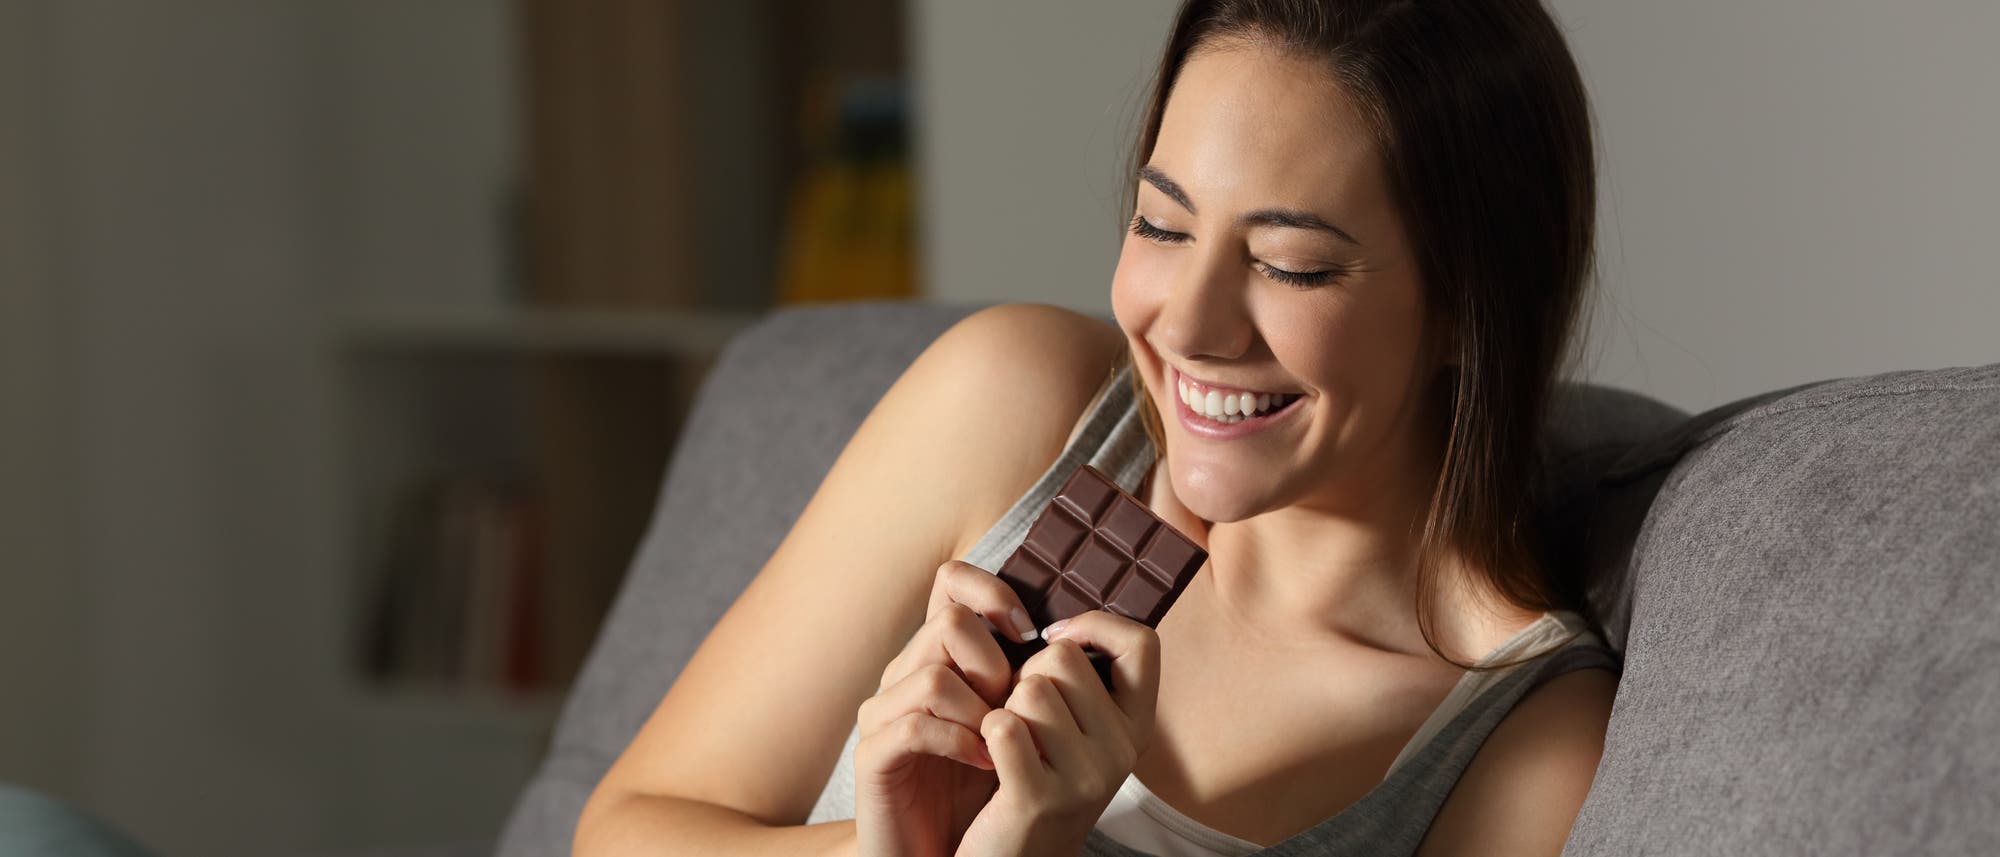 Frau freut sich auf den Genuss einer Tafel Schokolade